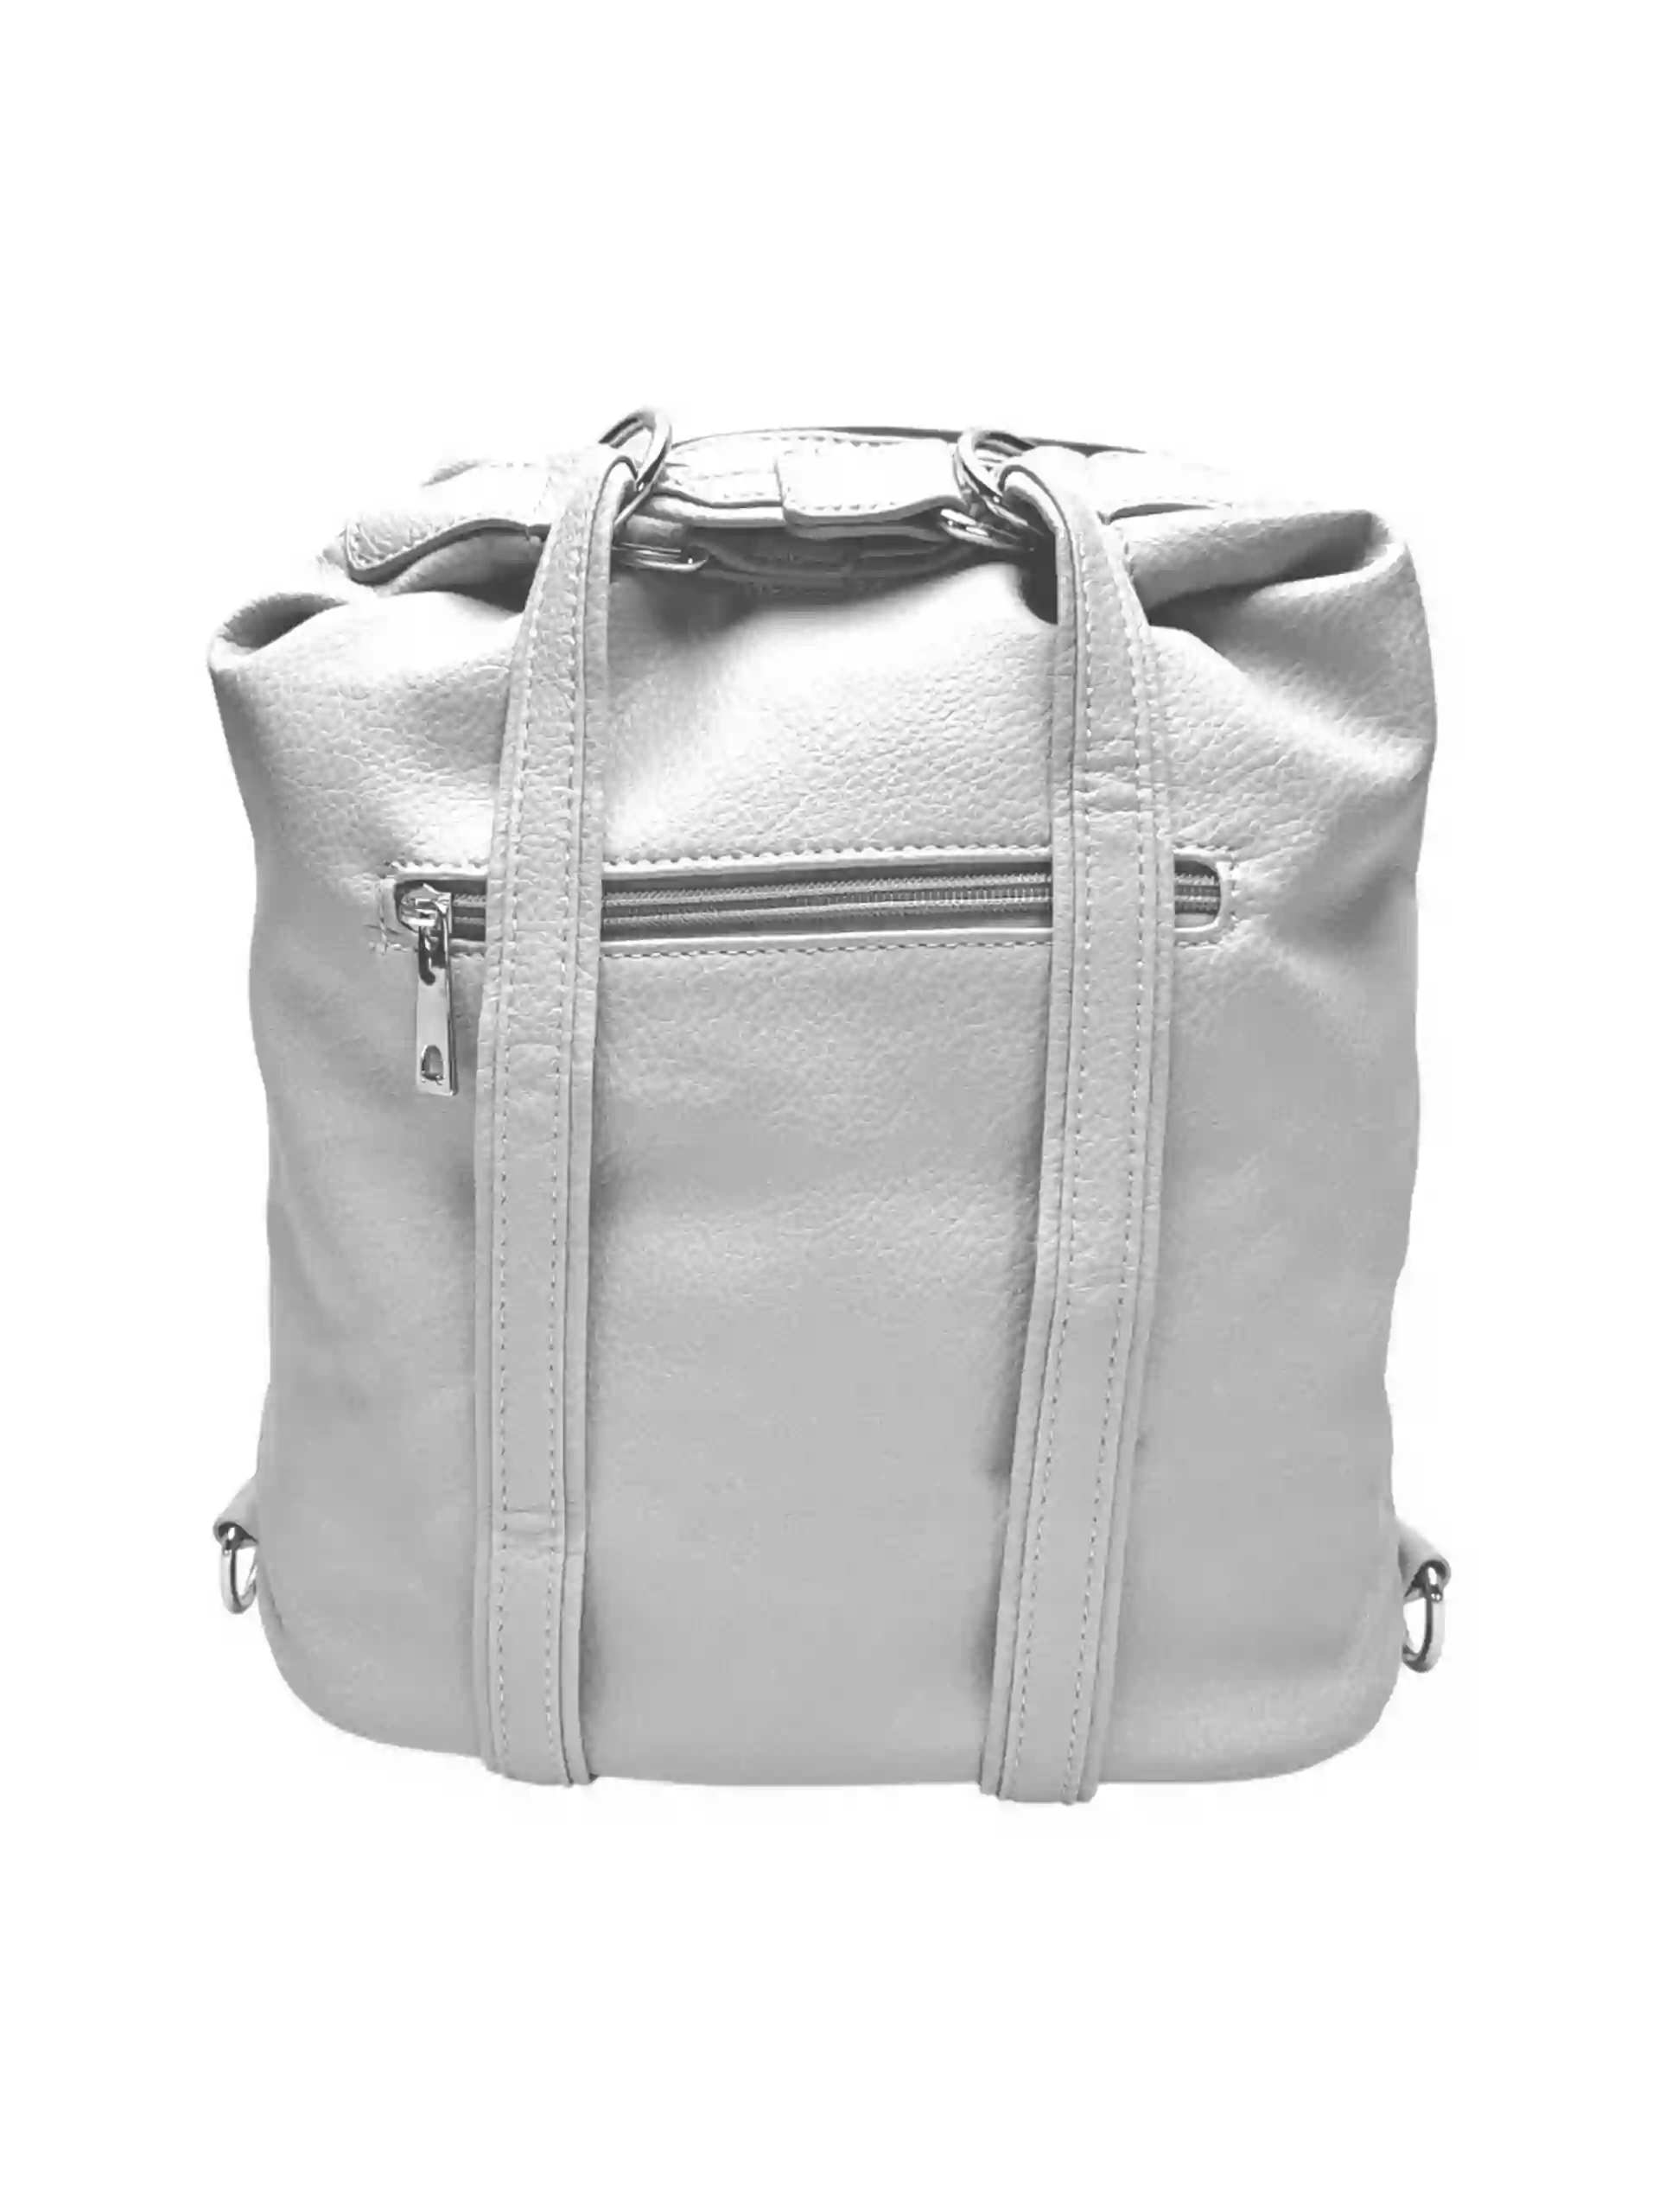 Střední světle šedý kabelko-batoh 2v1 s třásněmi, Bella Belly, 5394, zadní strana kabelko-batohu 2v1 s popruhy